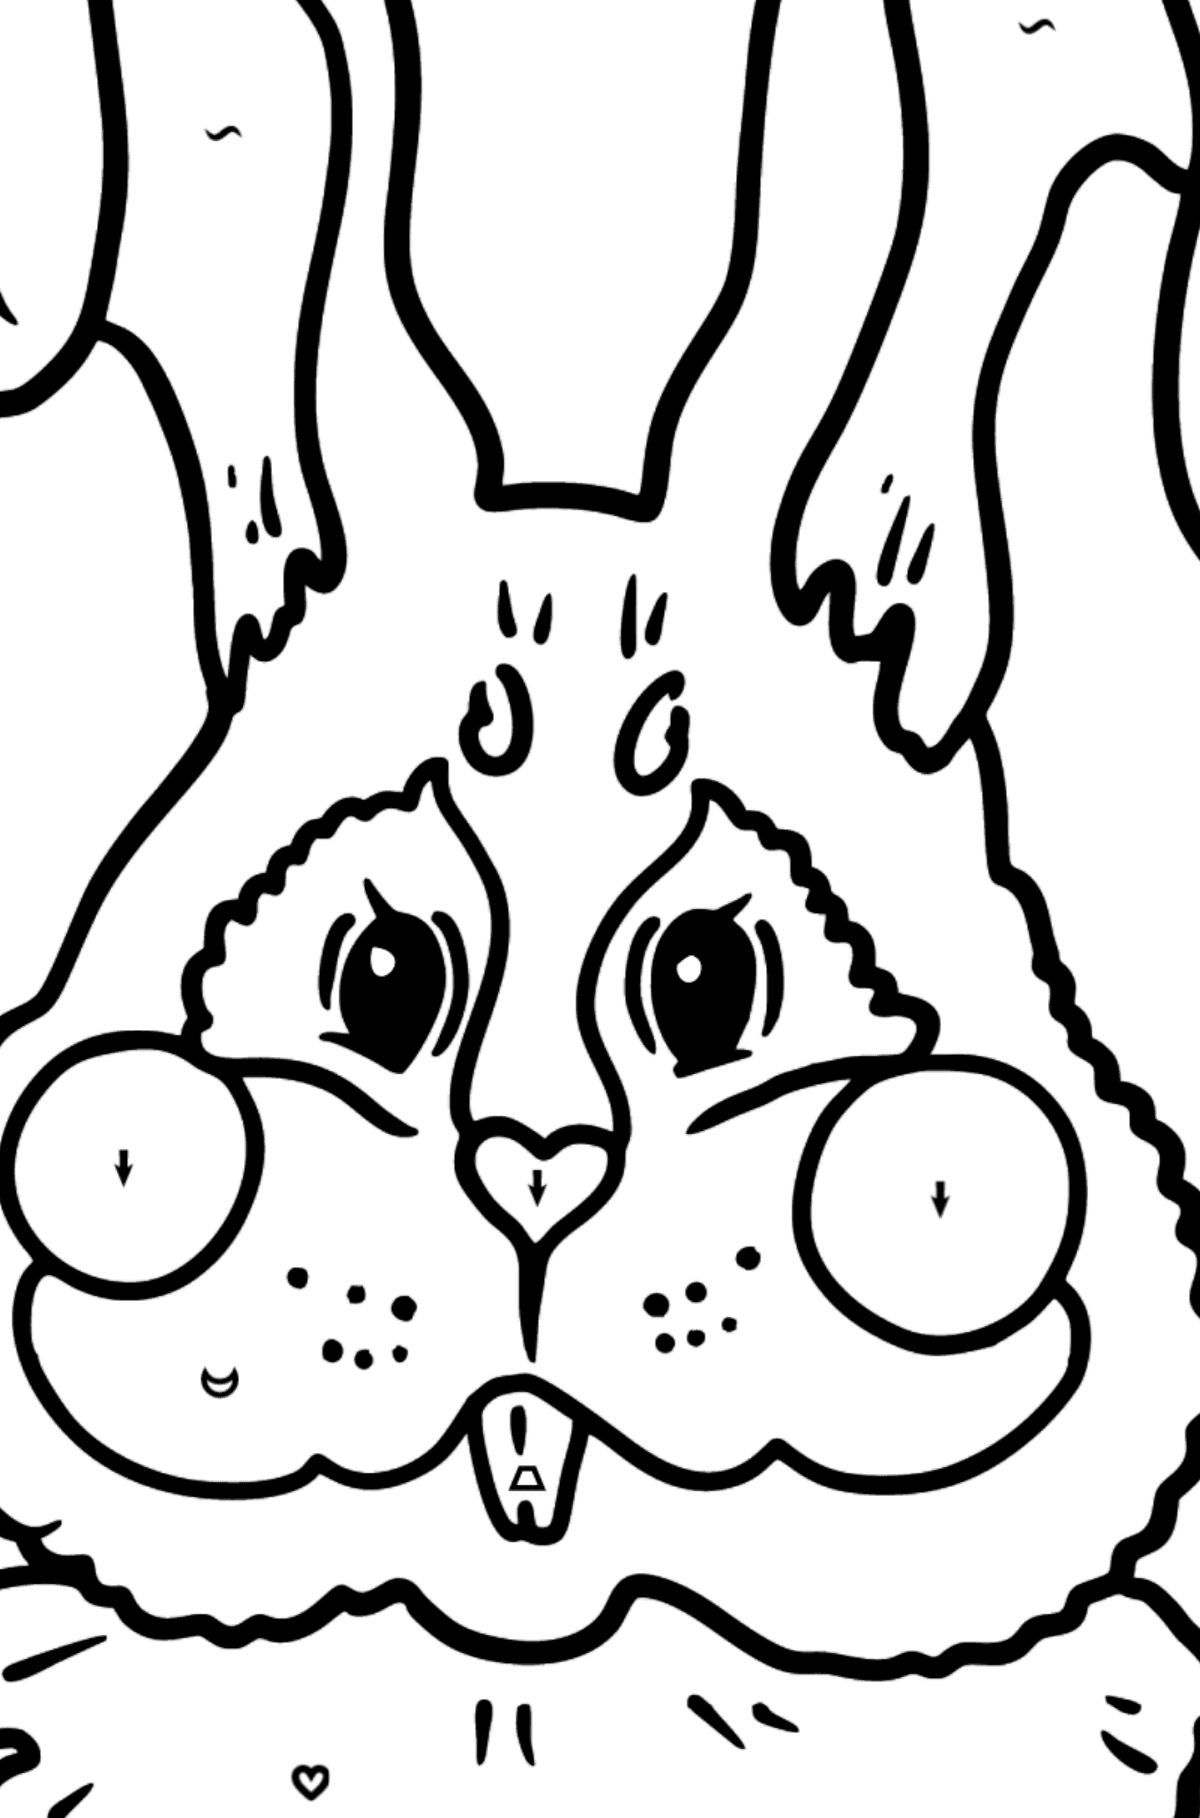 Tegning til fargelegging kanin snute - Fargelegge etter symboler og geometriske former for barn